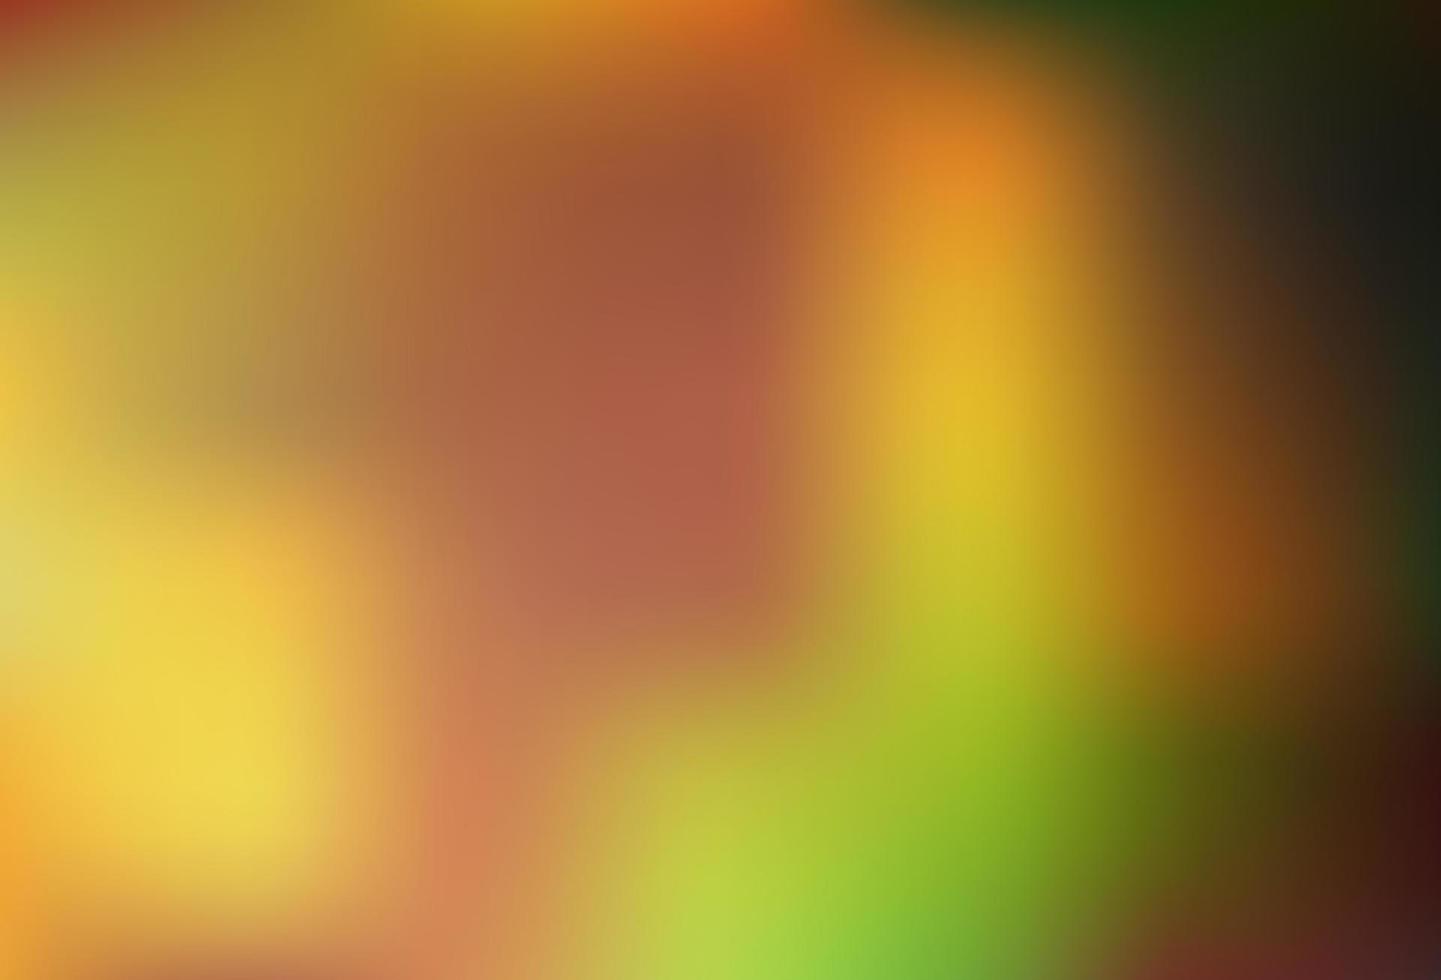 Dark Yellow, Orange vector blurred bright background.